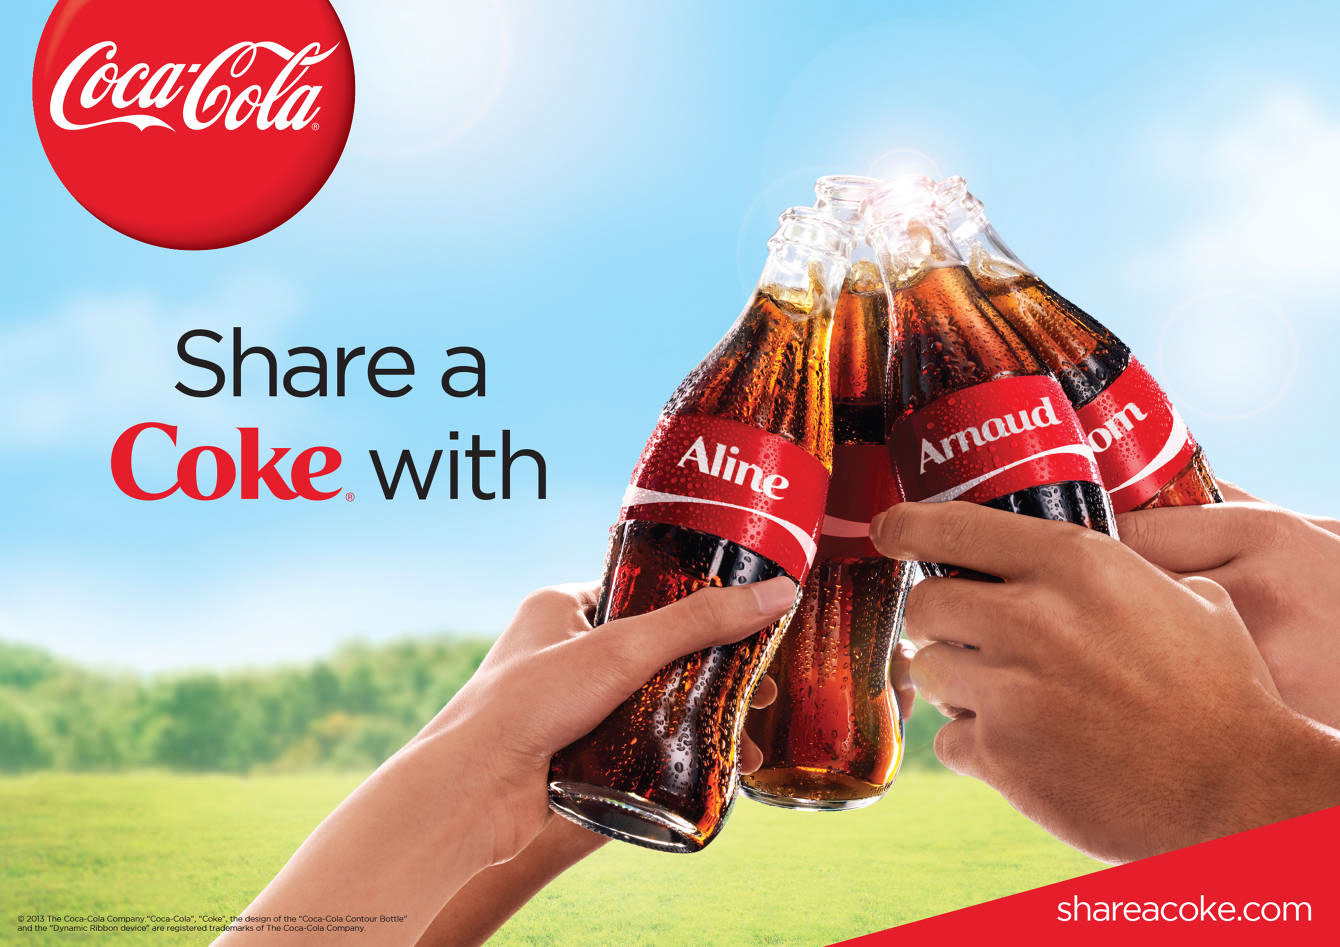 Coca-Cola "Share a Coke" 